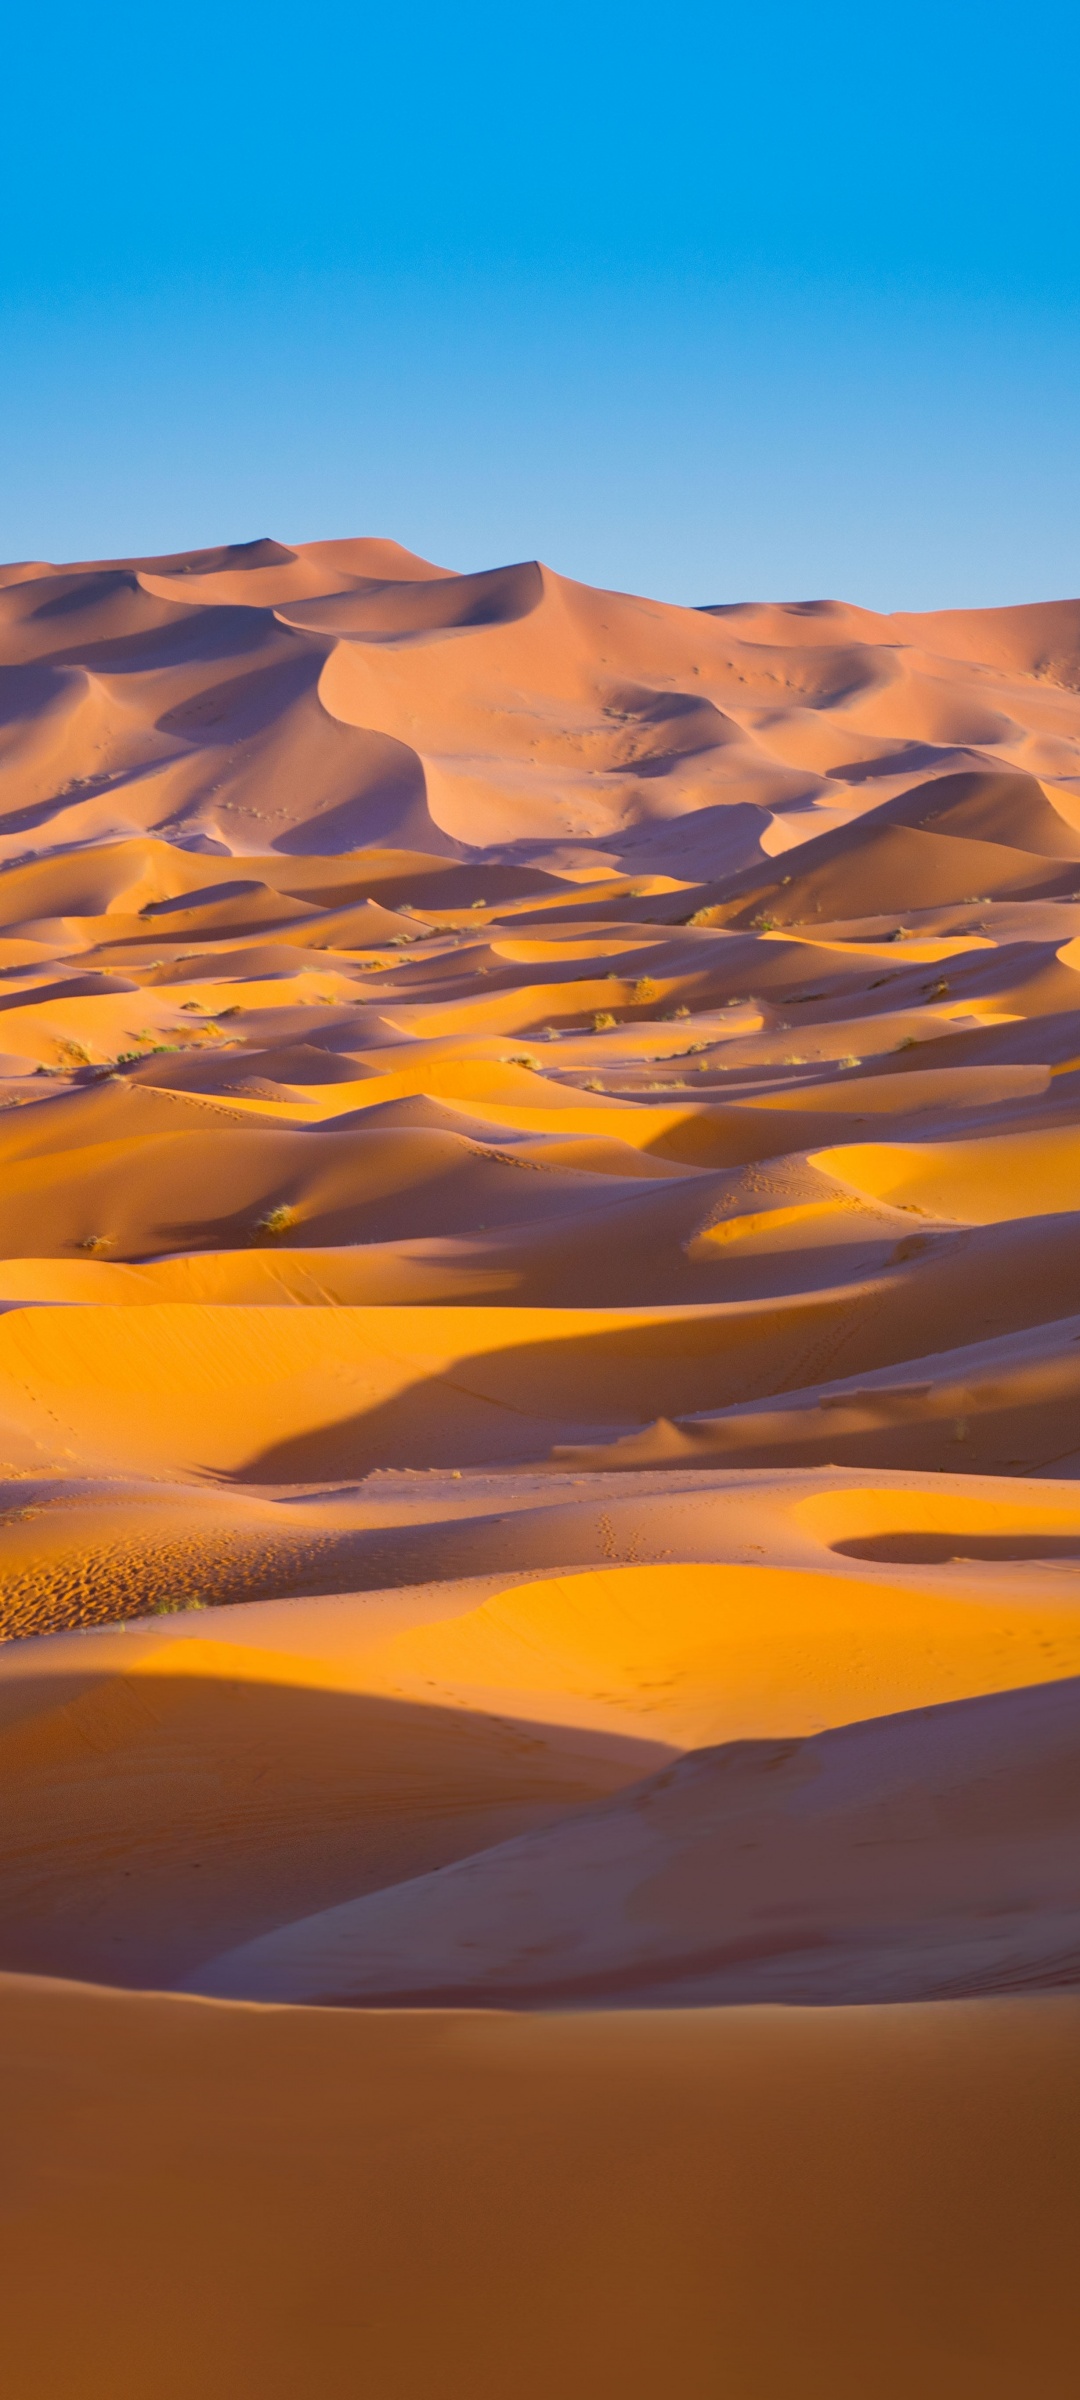 Sahara Desert 4K Wallpaper, Merzouga, Morocco, Sand dune